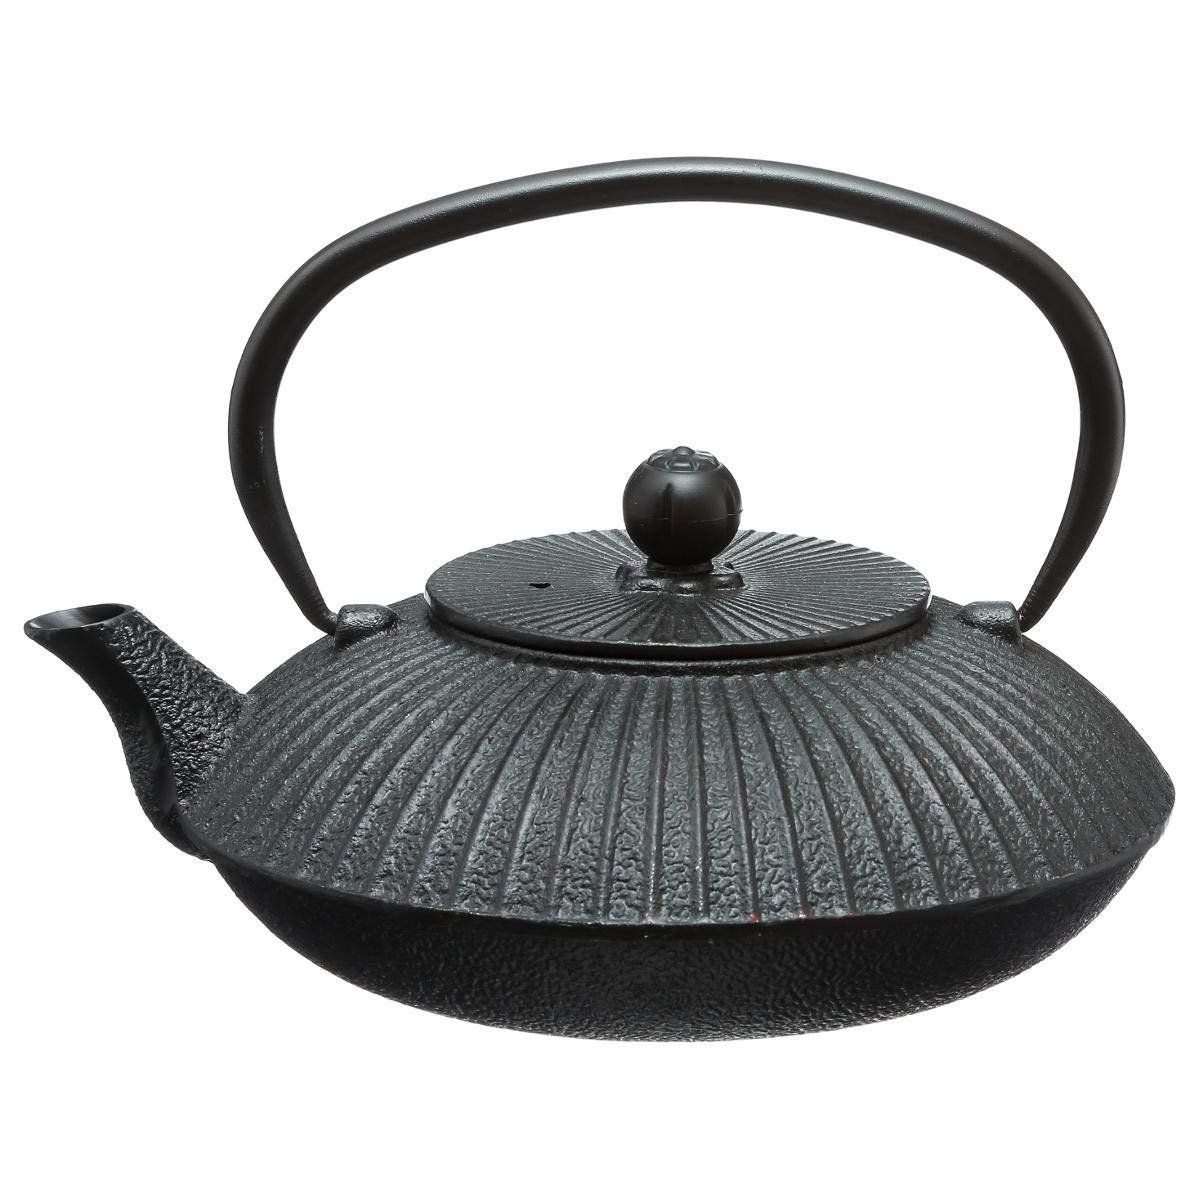 Secret de Gourmet Litinový čajový džbán, Profesionální čajový džbán, 800 ml, černá - EDAXO.CZ s.r.o.